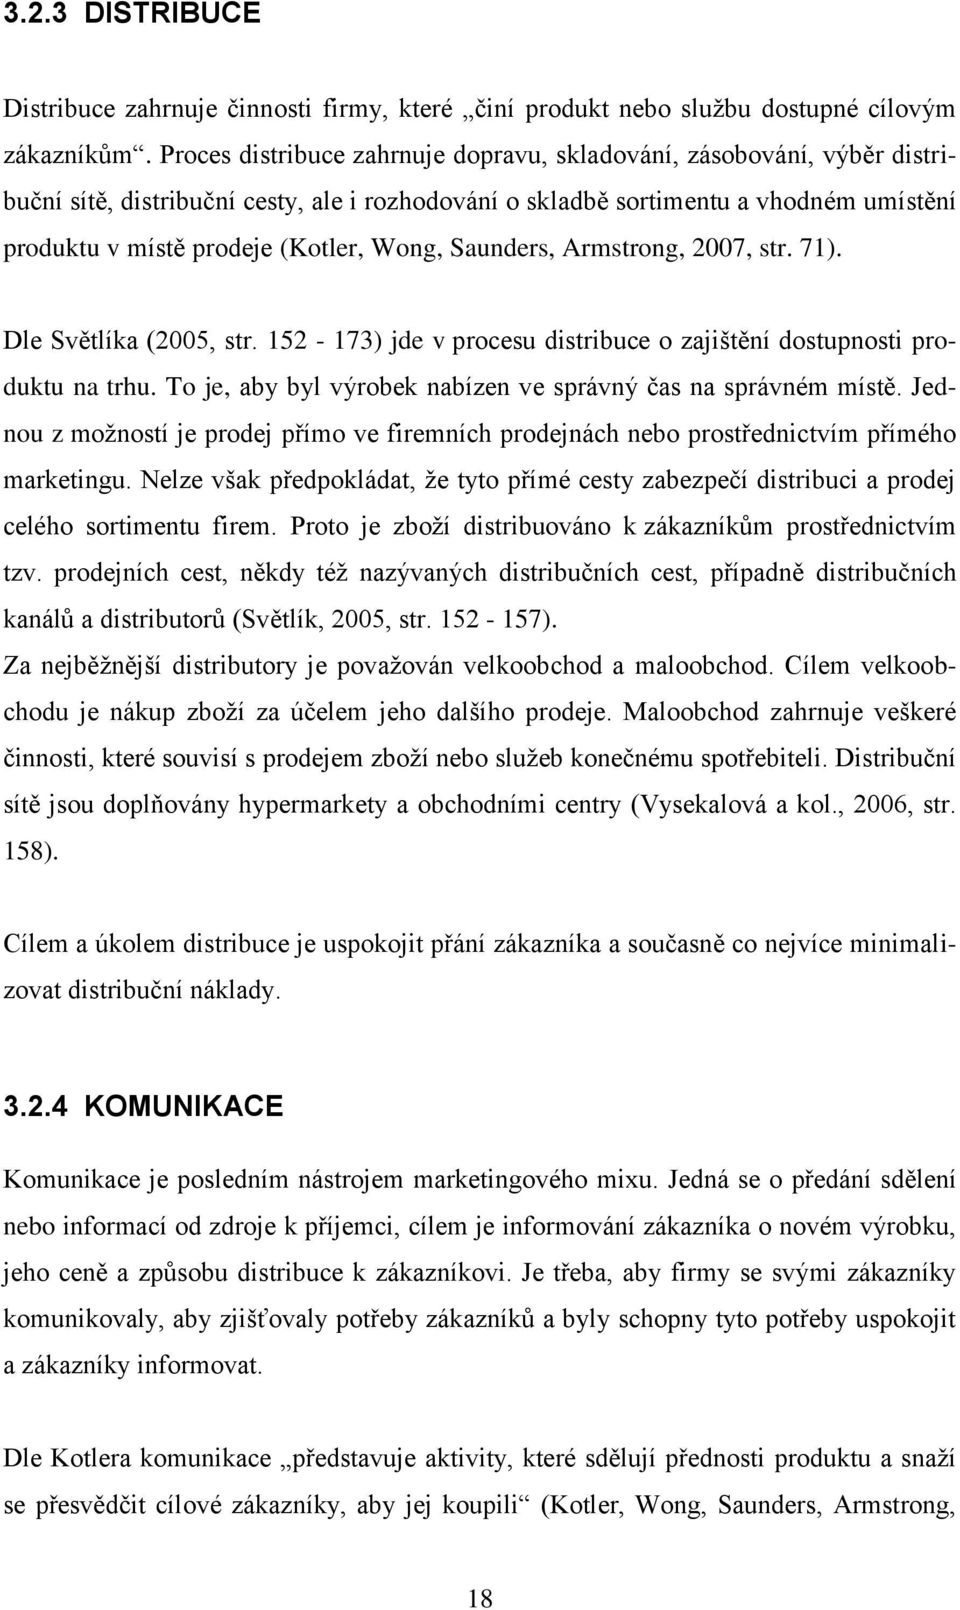 Wong, Saunders, Armstrong, 2007, str. 71). Dle Světlíka (2005, str. 152-173) jde v procesu distribuce o zajištění dostupnosti produktu na trhu.